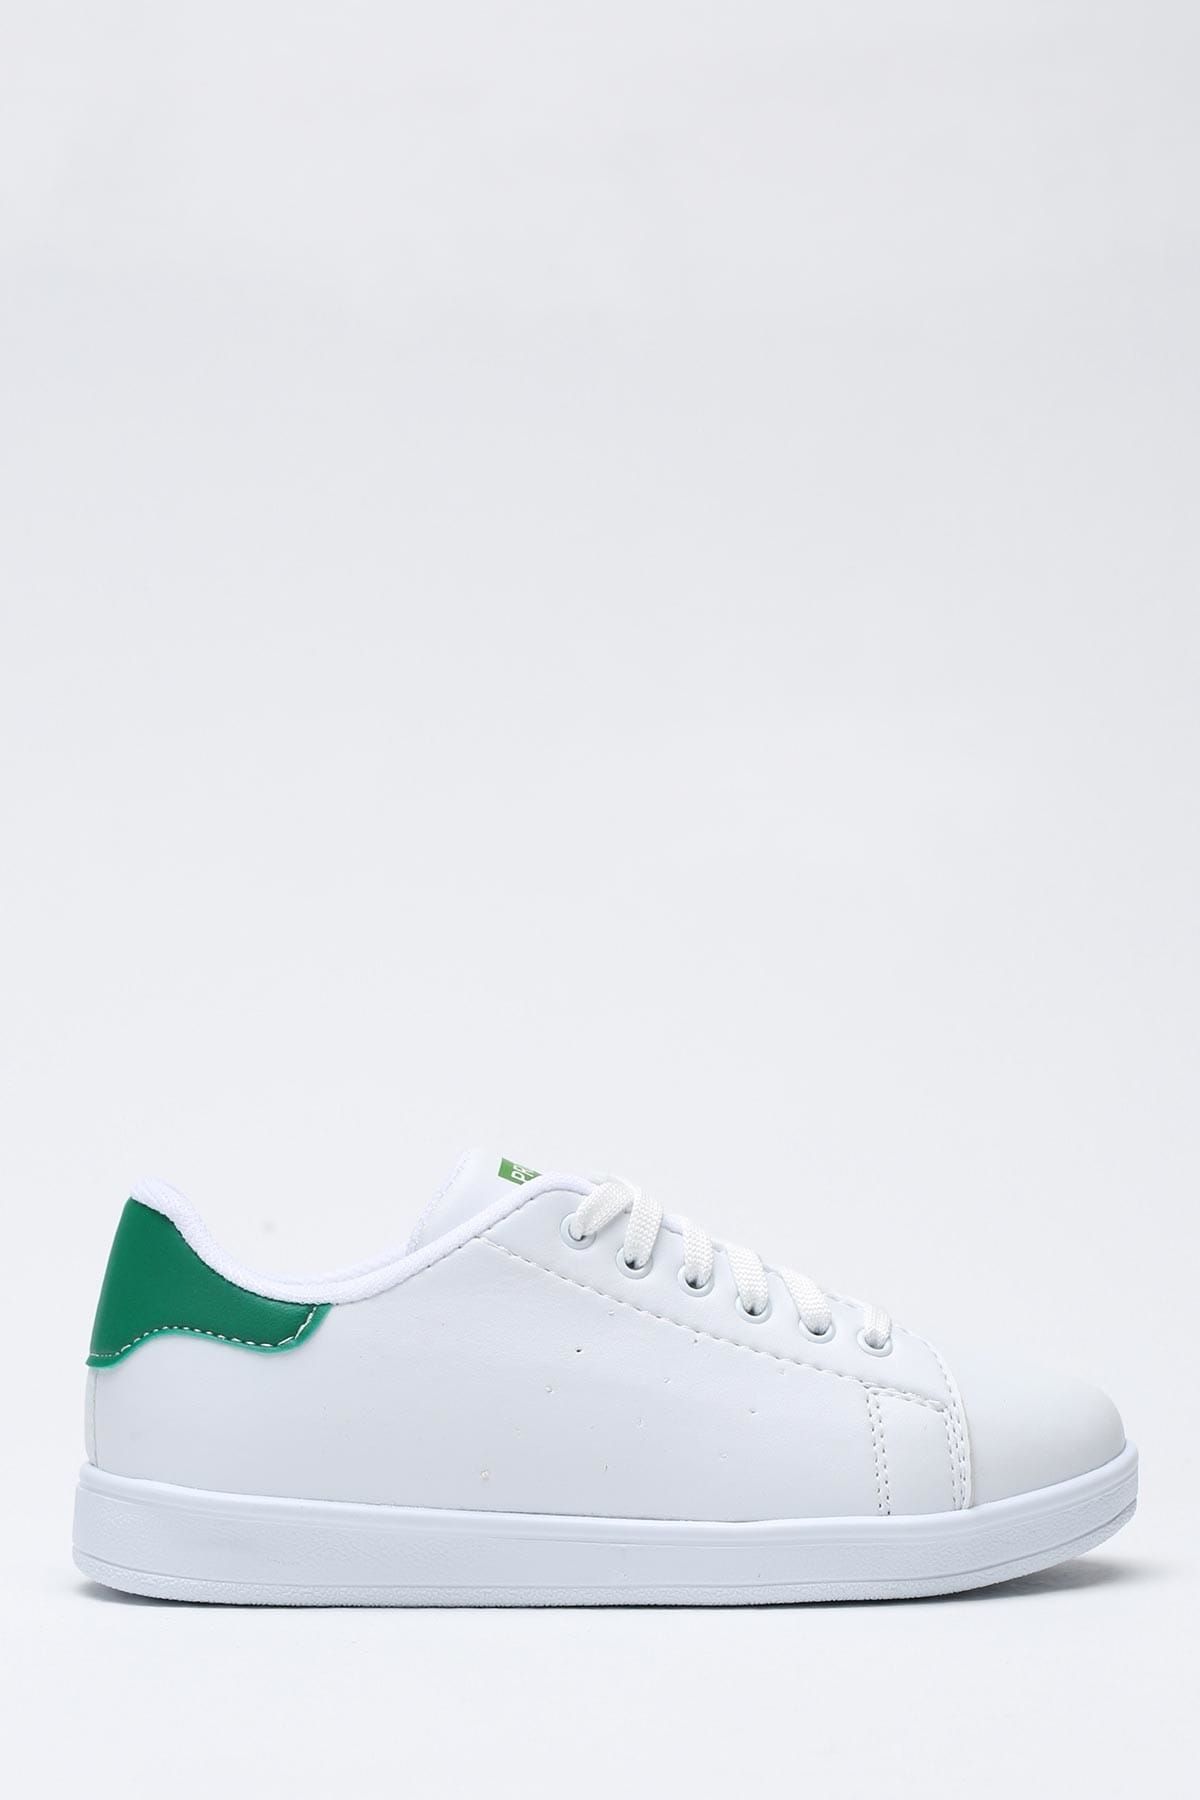 Ayakkabı Modası Beyaz Yeşil Kadın Spor Ayakkabı 1938-9-4211